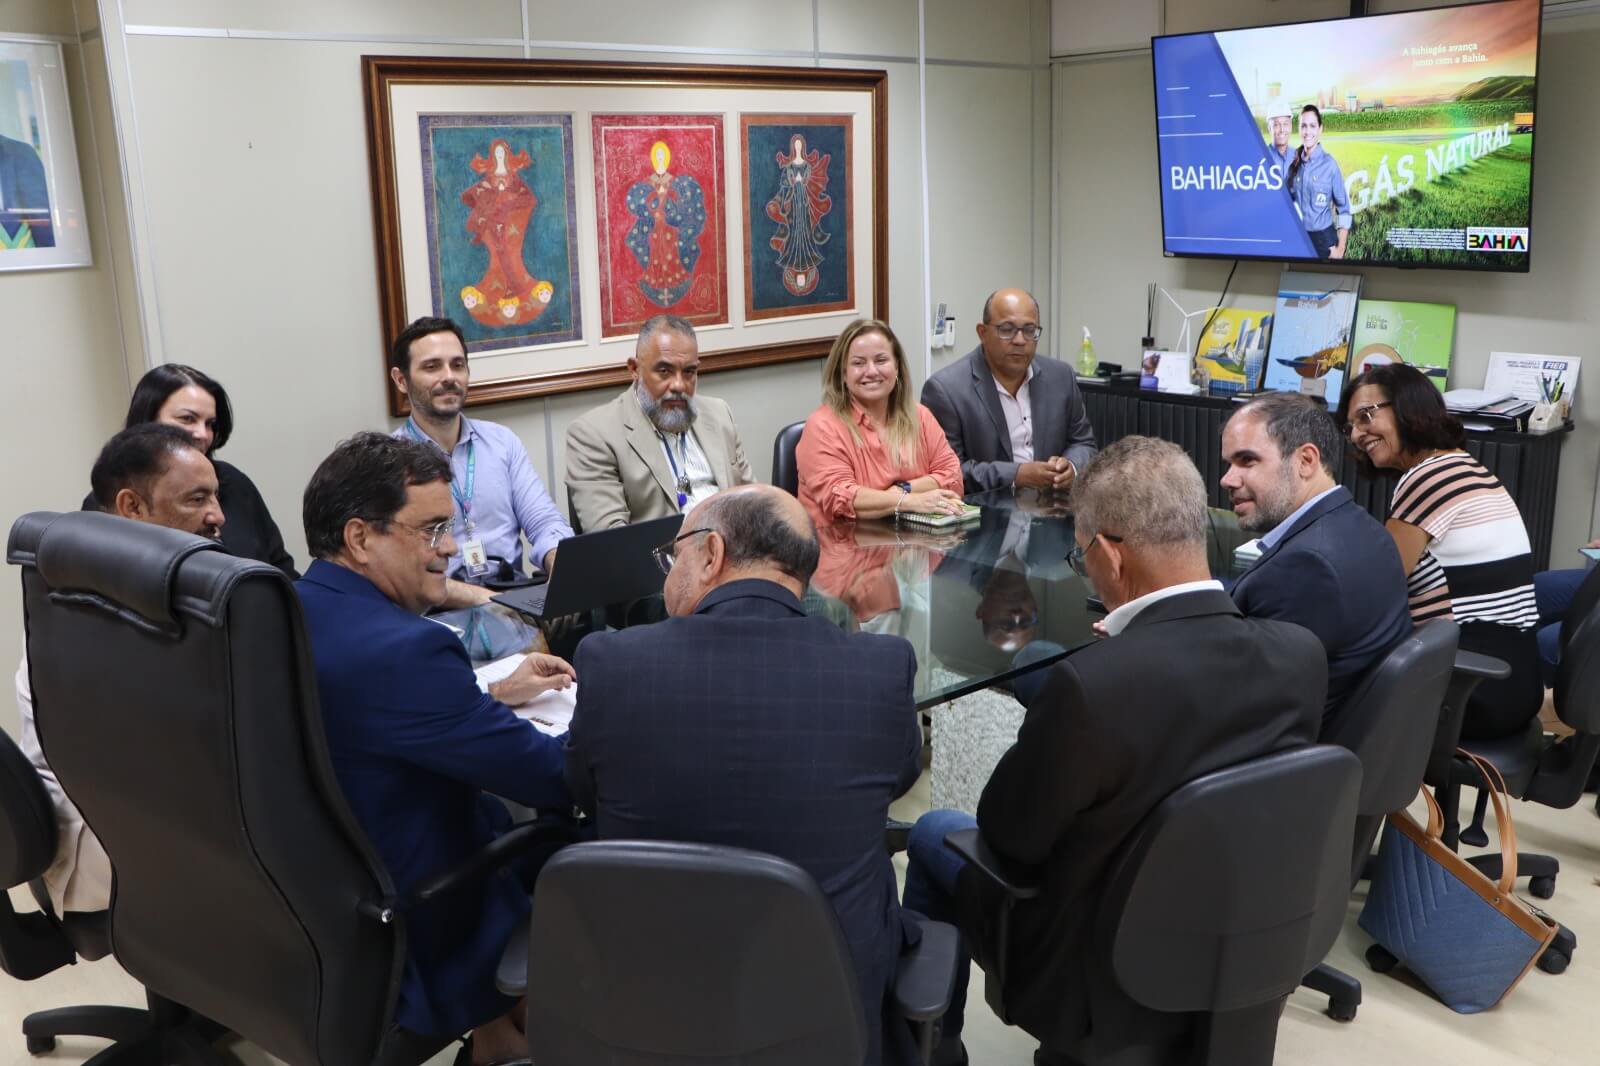 Acordo entre SDE e Bahiagás fortalecerá interiorização da distribuição de gás no Estado 4